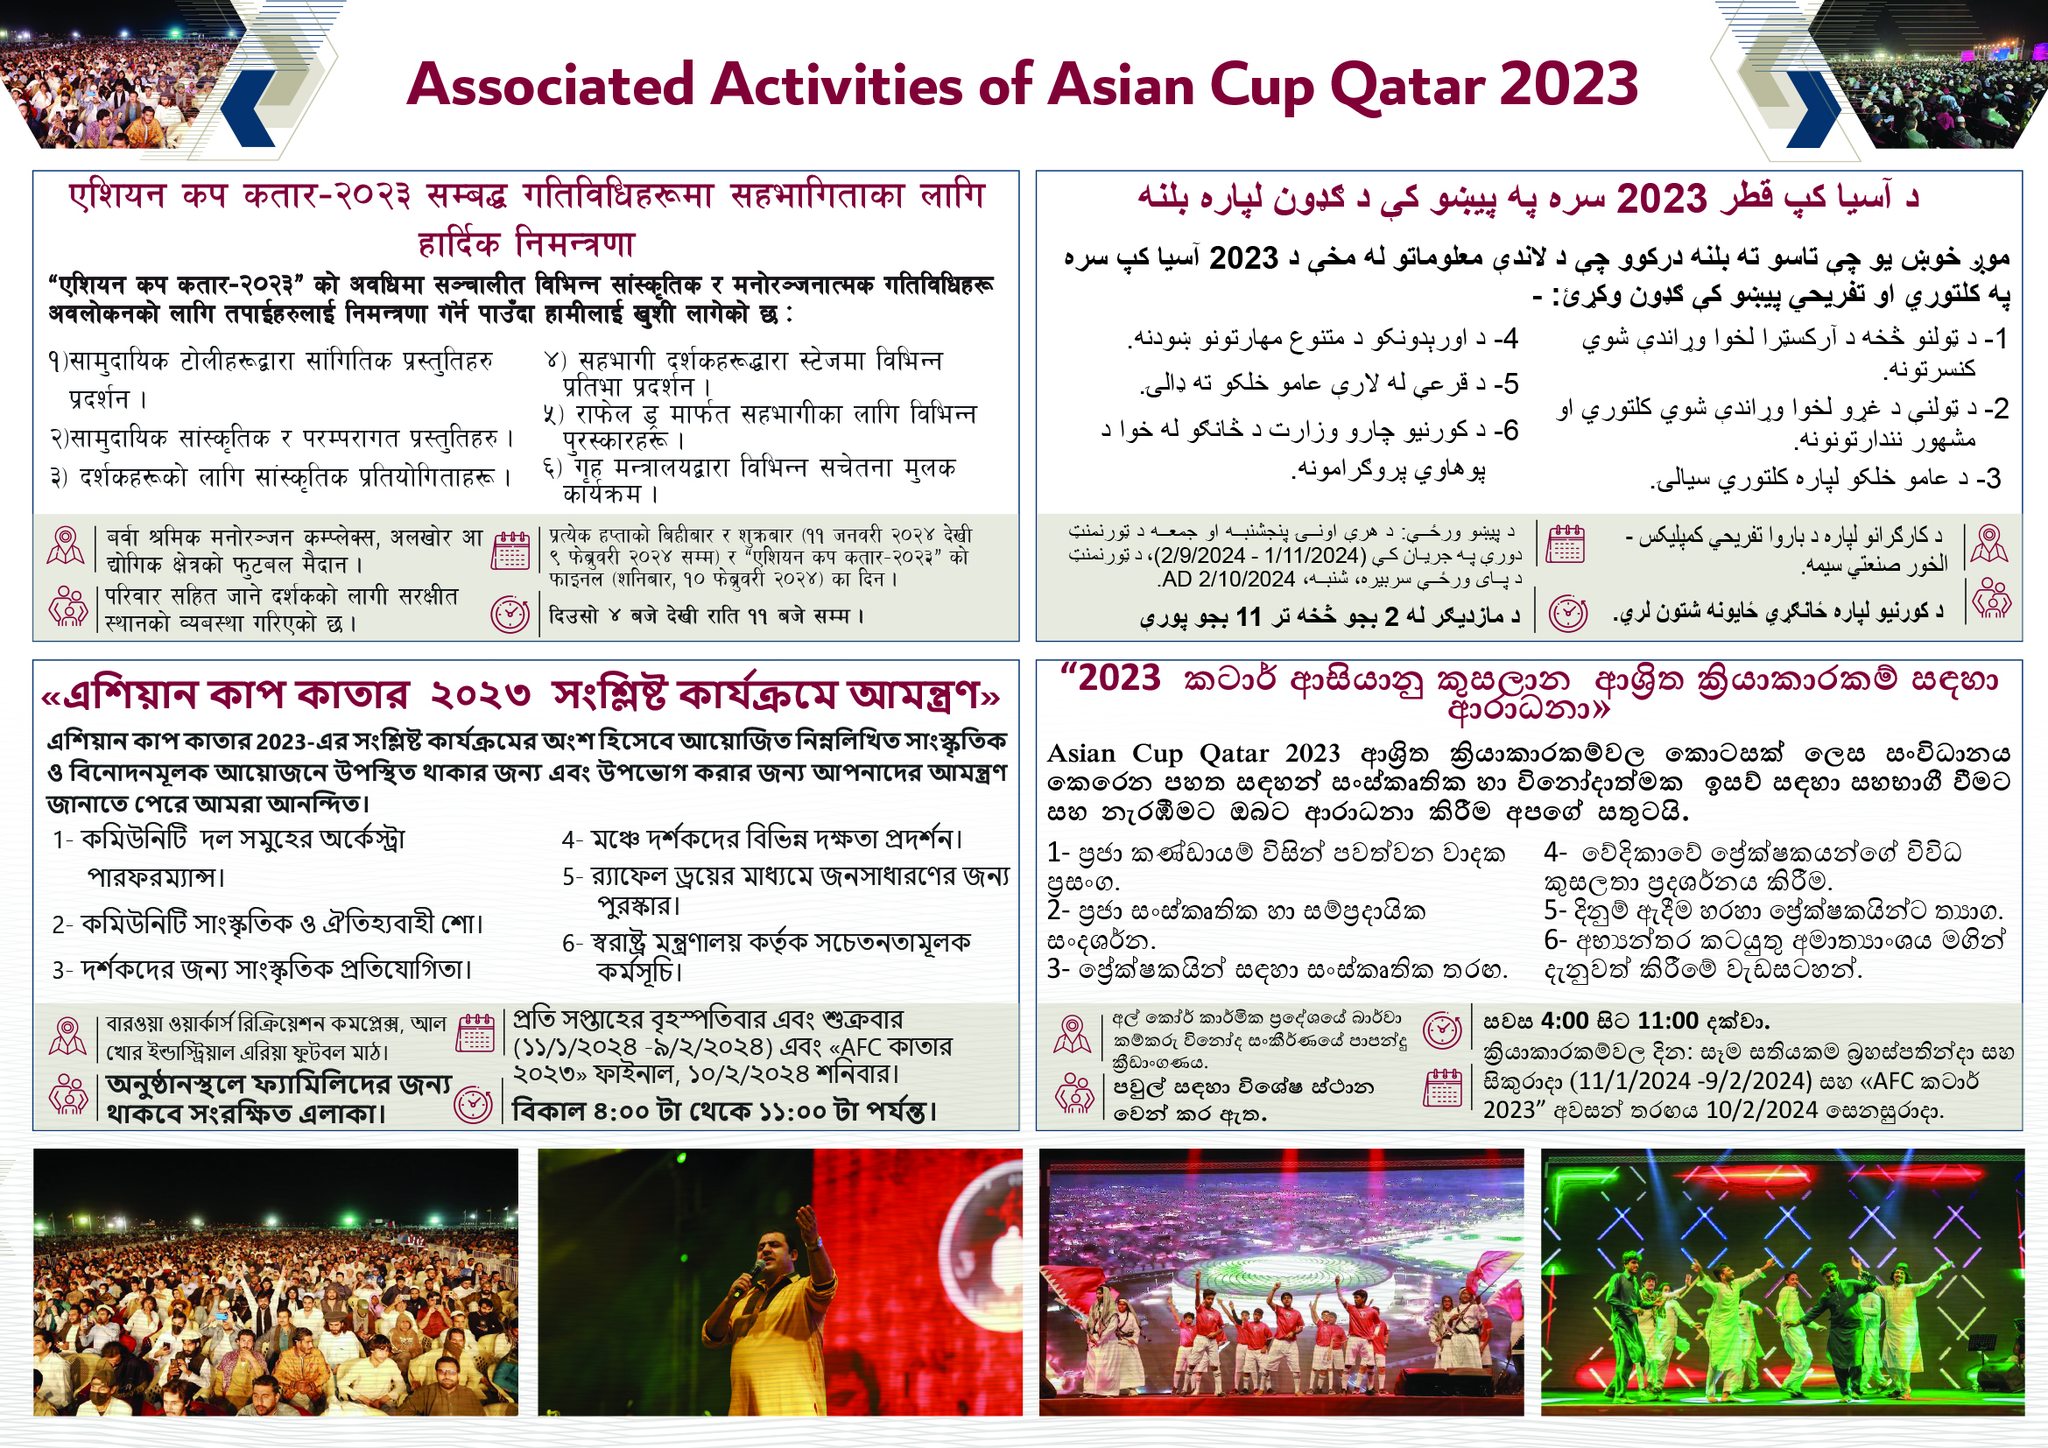 एशियन कप कतार-२०२३ सम्बद्द गतिविधिहरुमा सहभागिताका लागि हार्दिक निमन्त्रणा